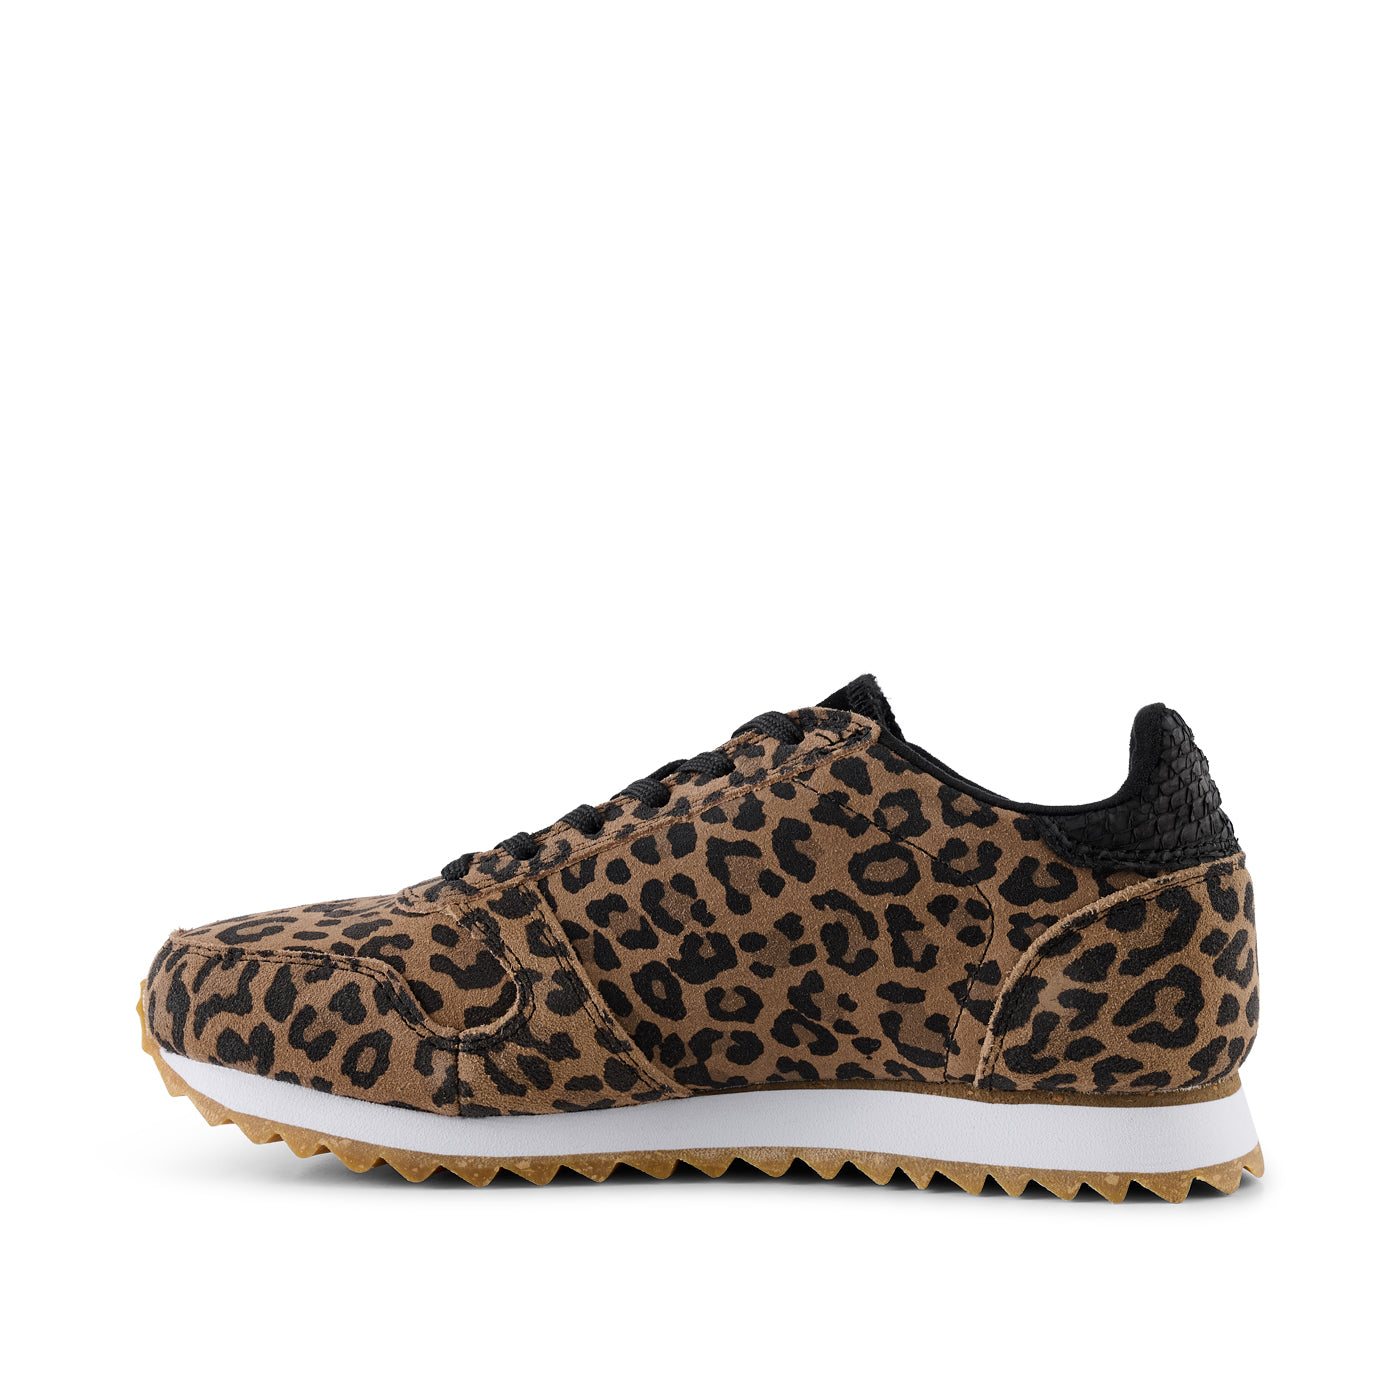 WODEN Ydun Suede Sneakers 327 Leopard